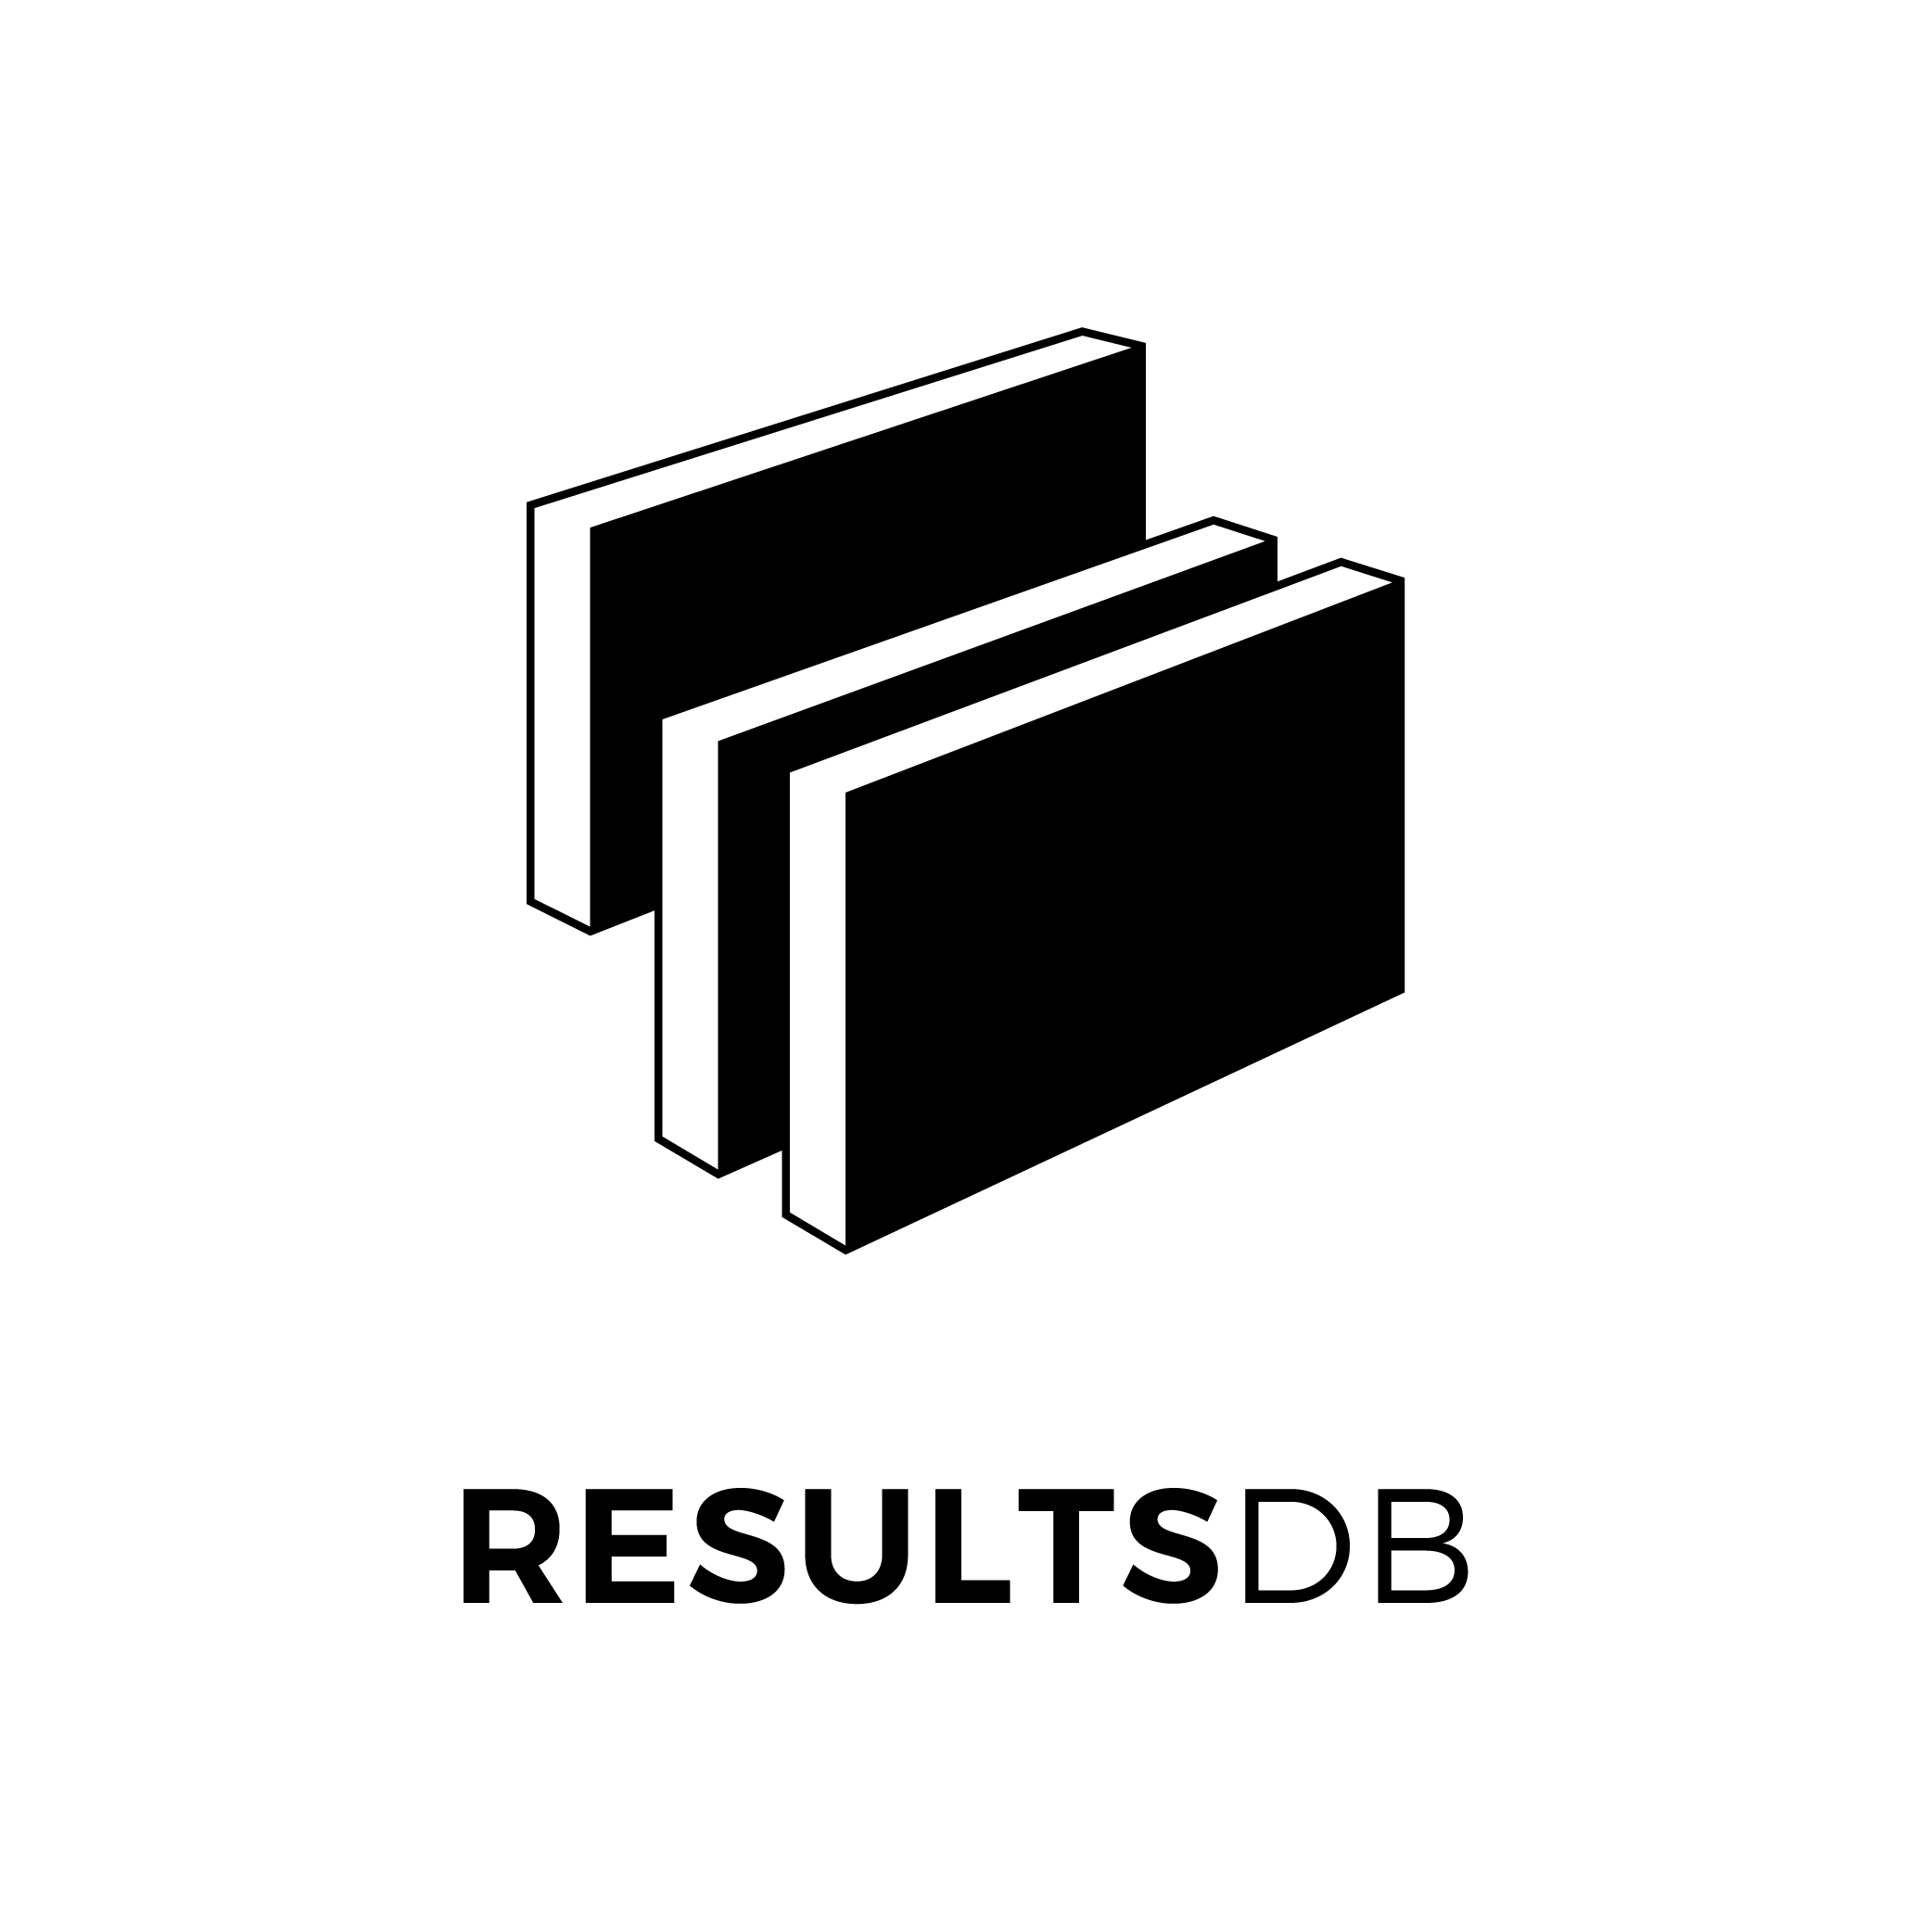 ResultsDB logo - black